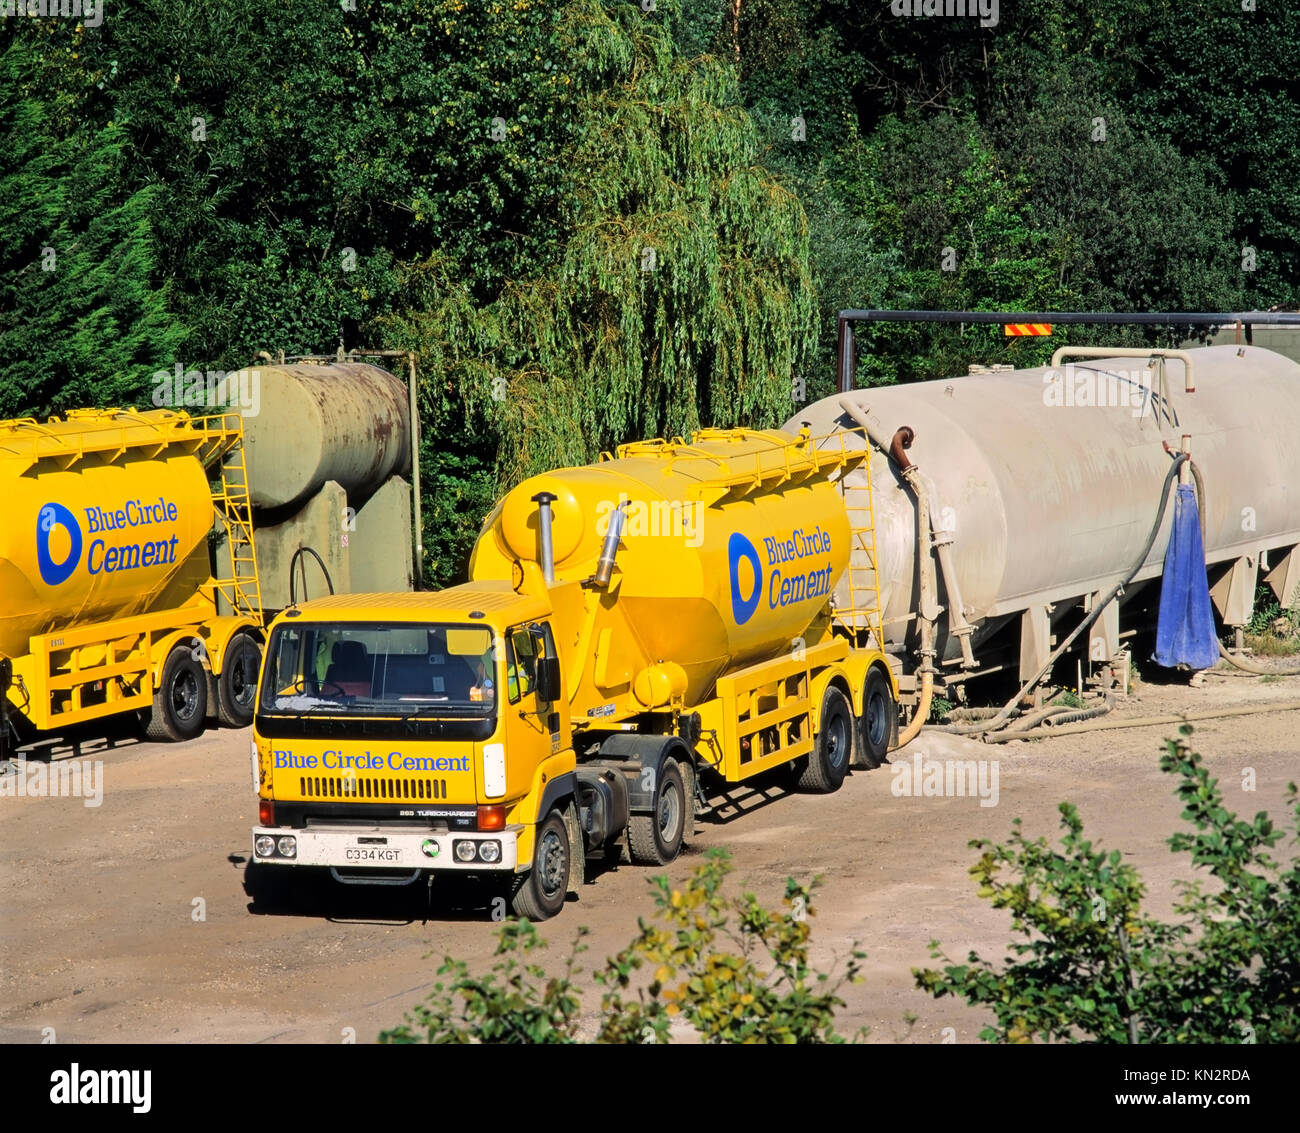 Impianto di stoccaggio e trasporto del cemento Blue Circle, Inghilterra, Regno Unito Foto Stock